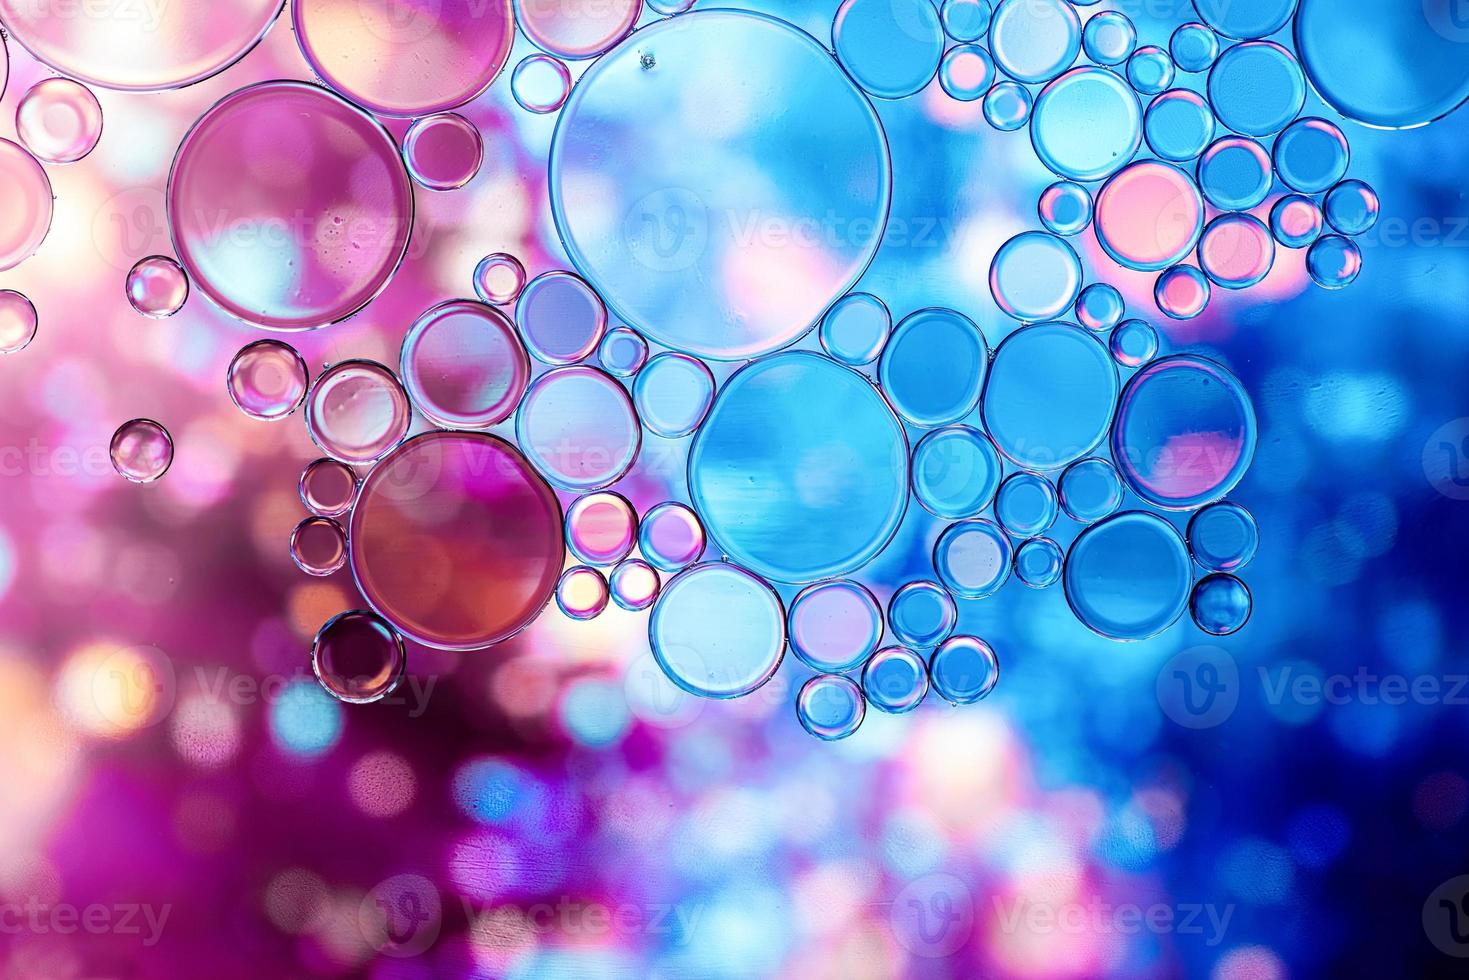 blauwe en paarse oliebellen in water met abstract patroon foto